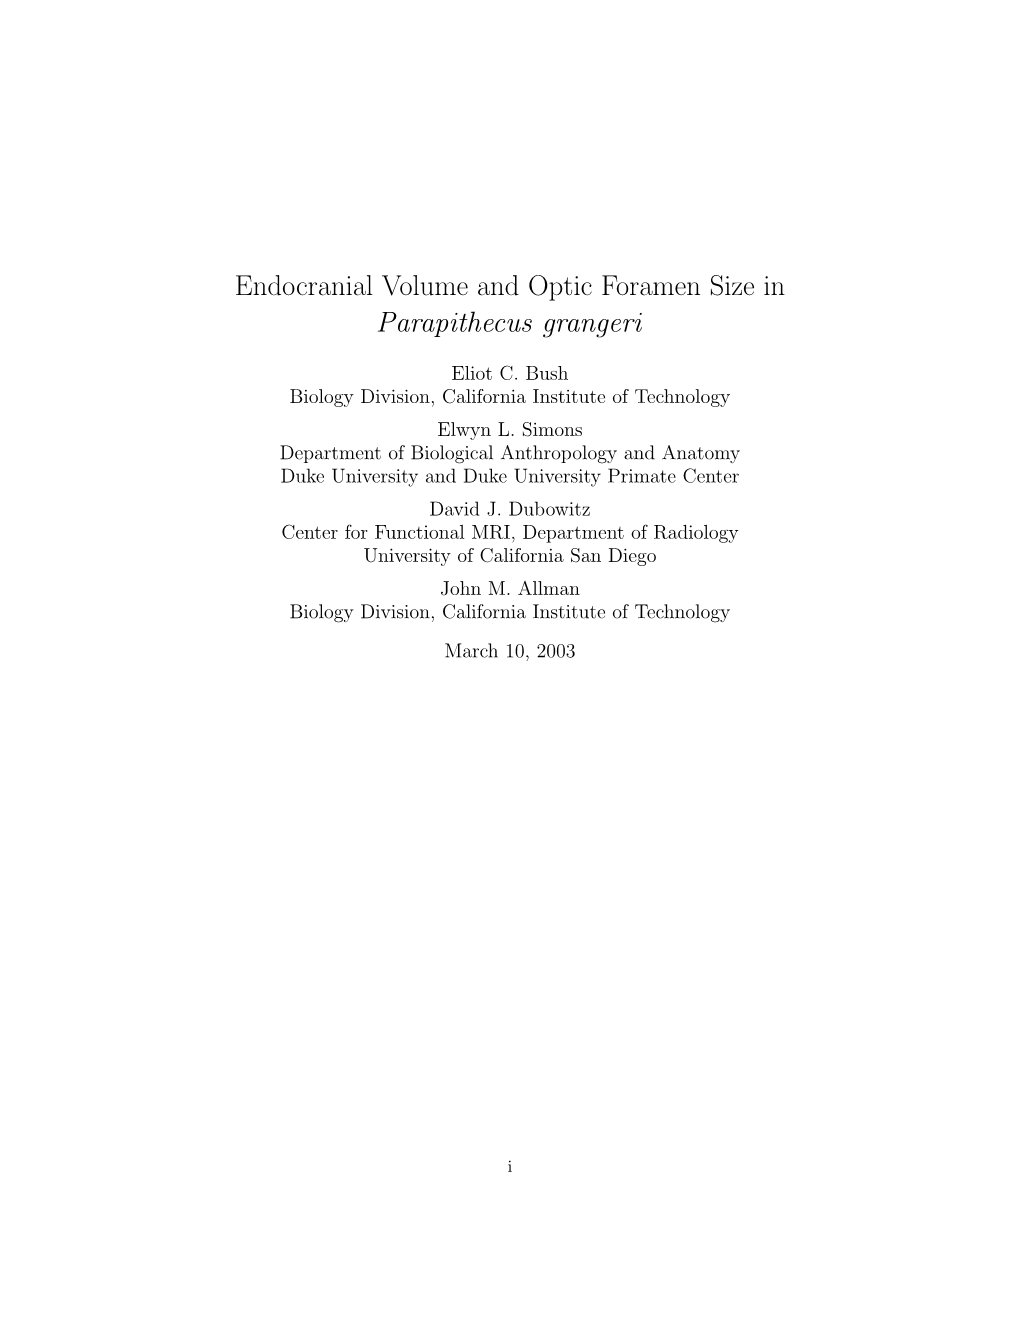 Endocranial Volume and Optic Foramen Size in Parapithecus Grangeri